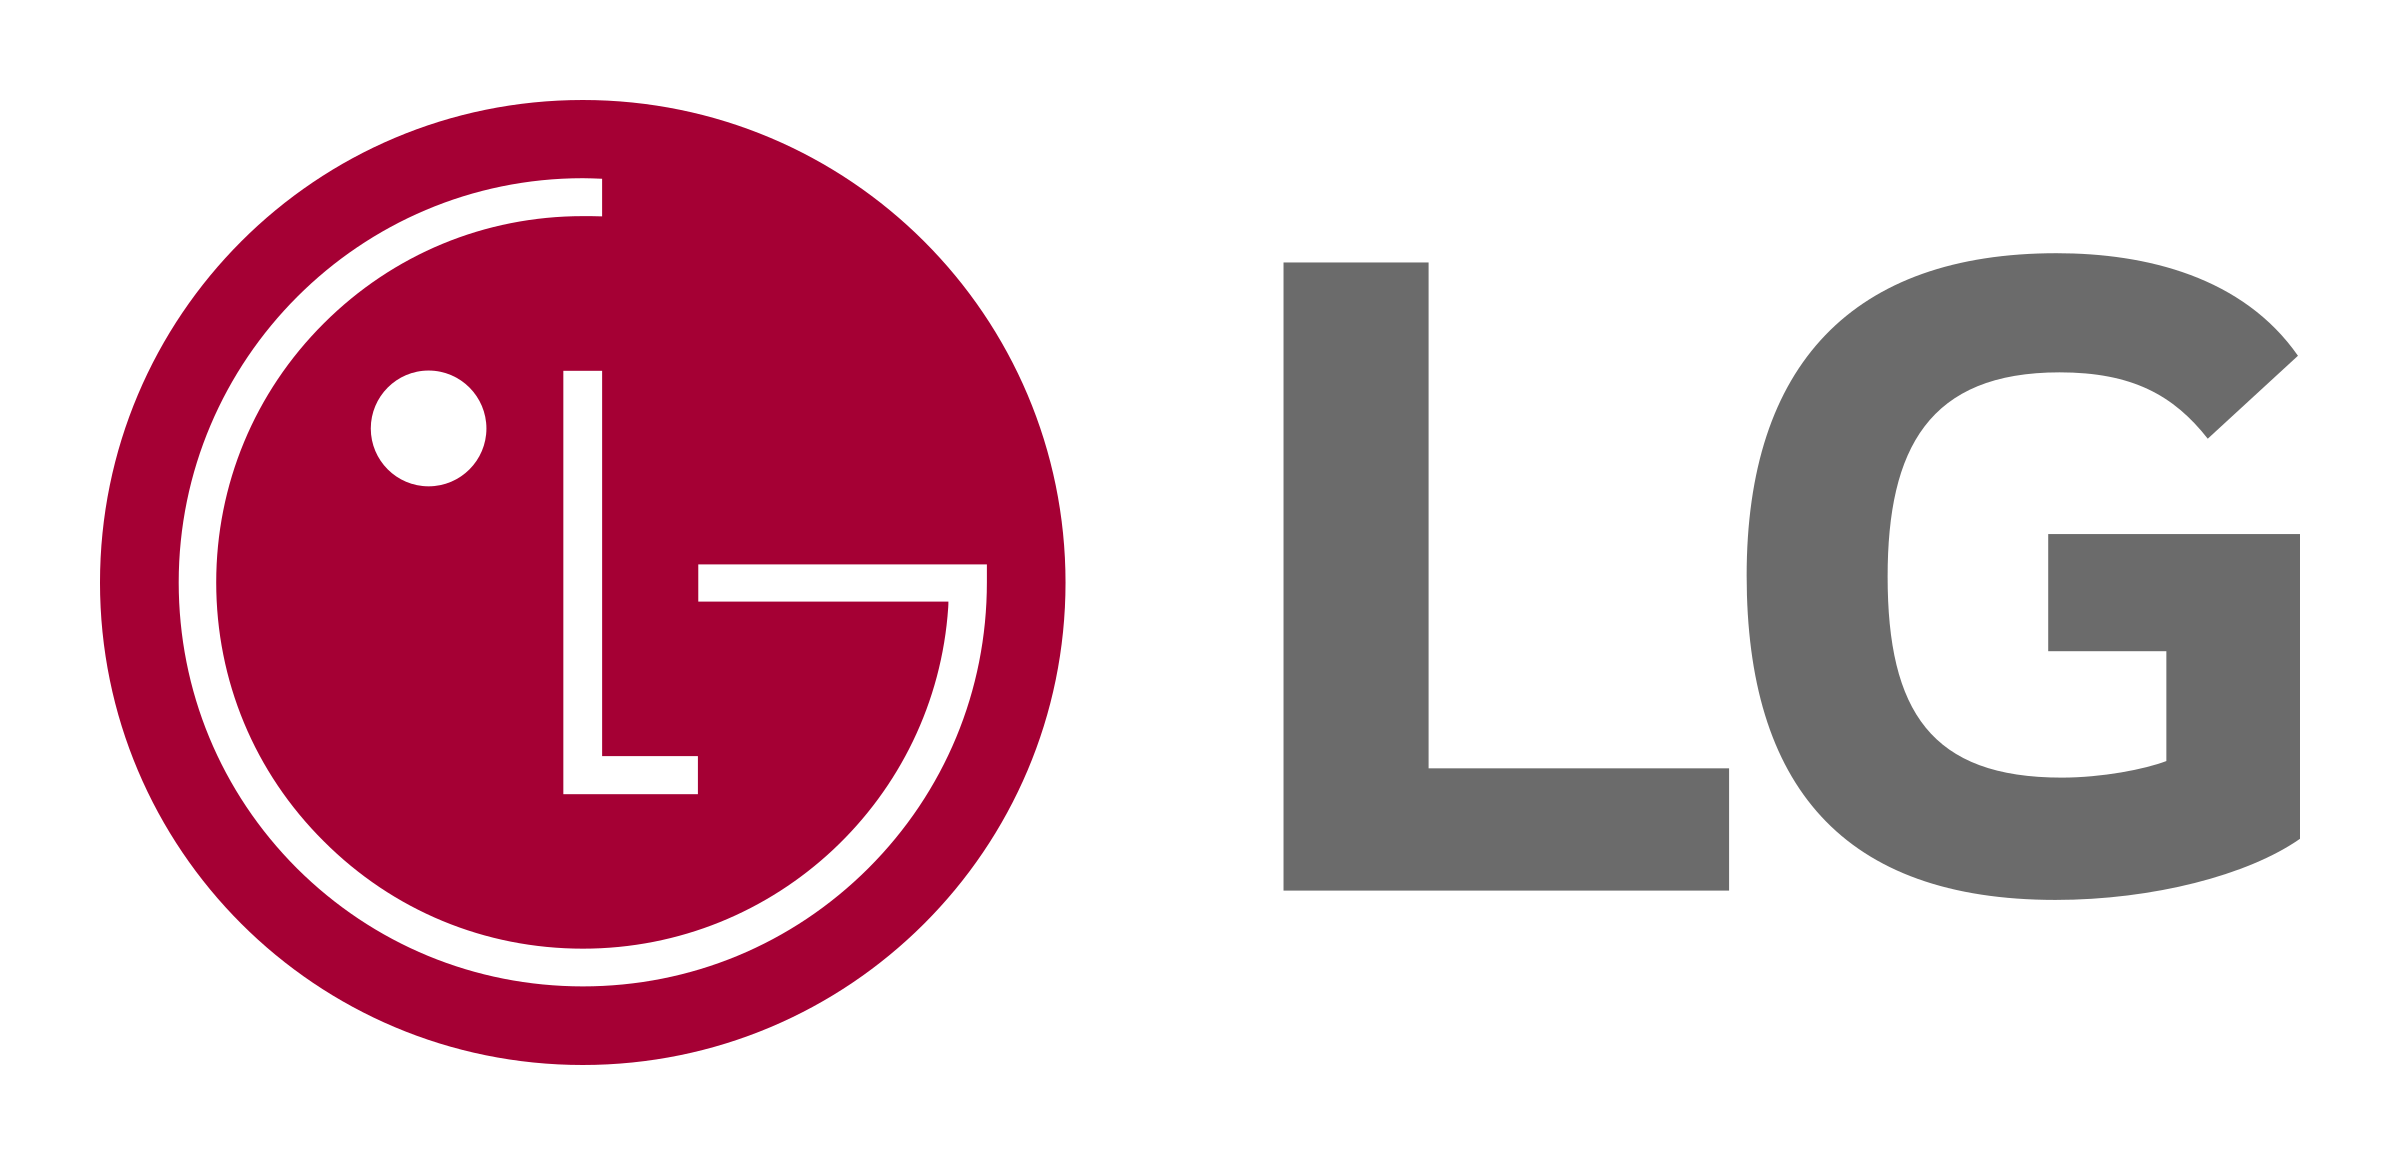 Lg Logo Transparent - KibrisPDR